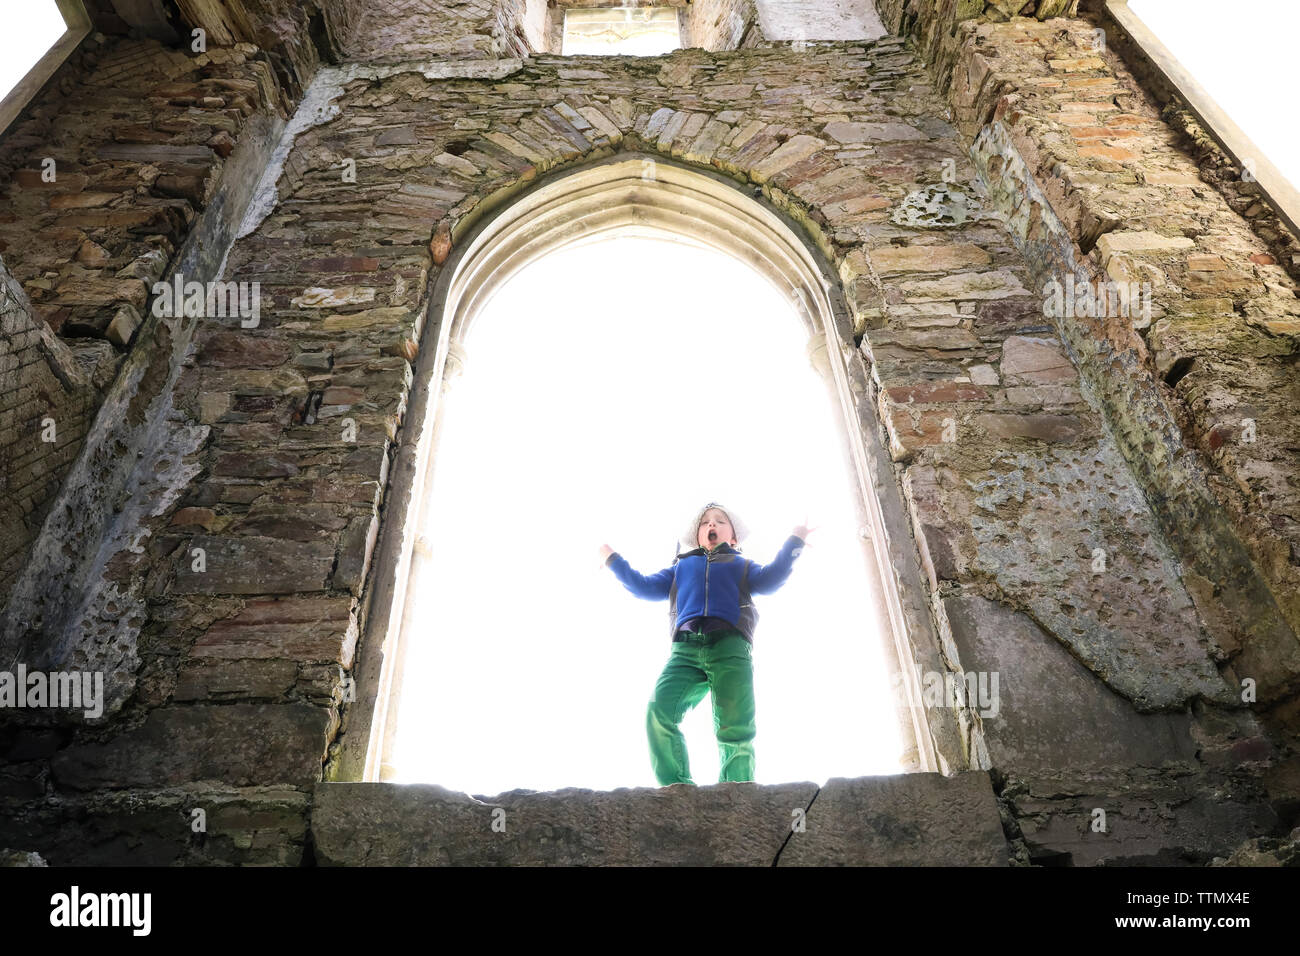 Junge macht dumm Stellen beim Stehen in der großen steinernen Burg Fenster Stockfoto